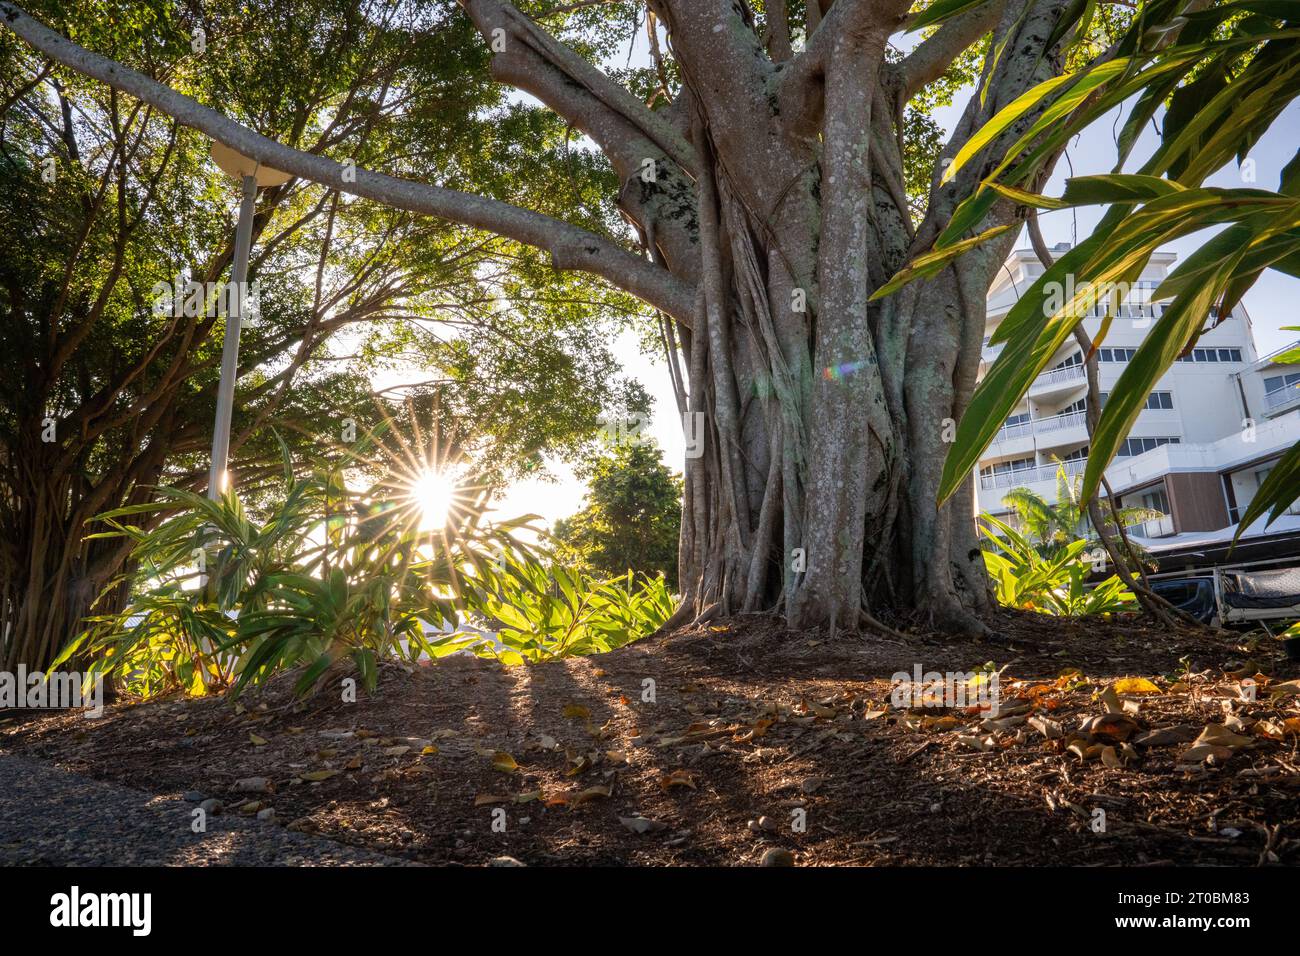 Incroyable Australie dans a Journey to the Jungle ainsi que City, pour tout voir, des gratte-ciel de Sydney à la faune et la flore de Cairns. Banque D'Images